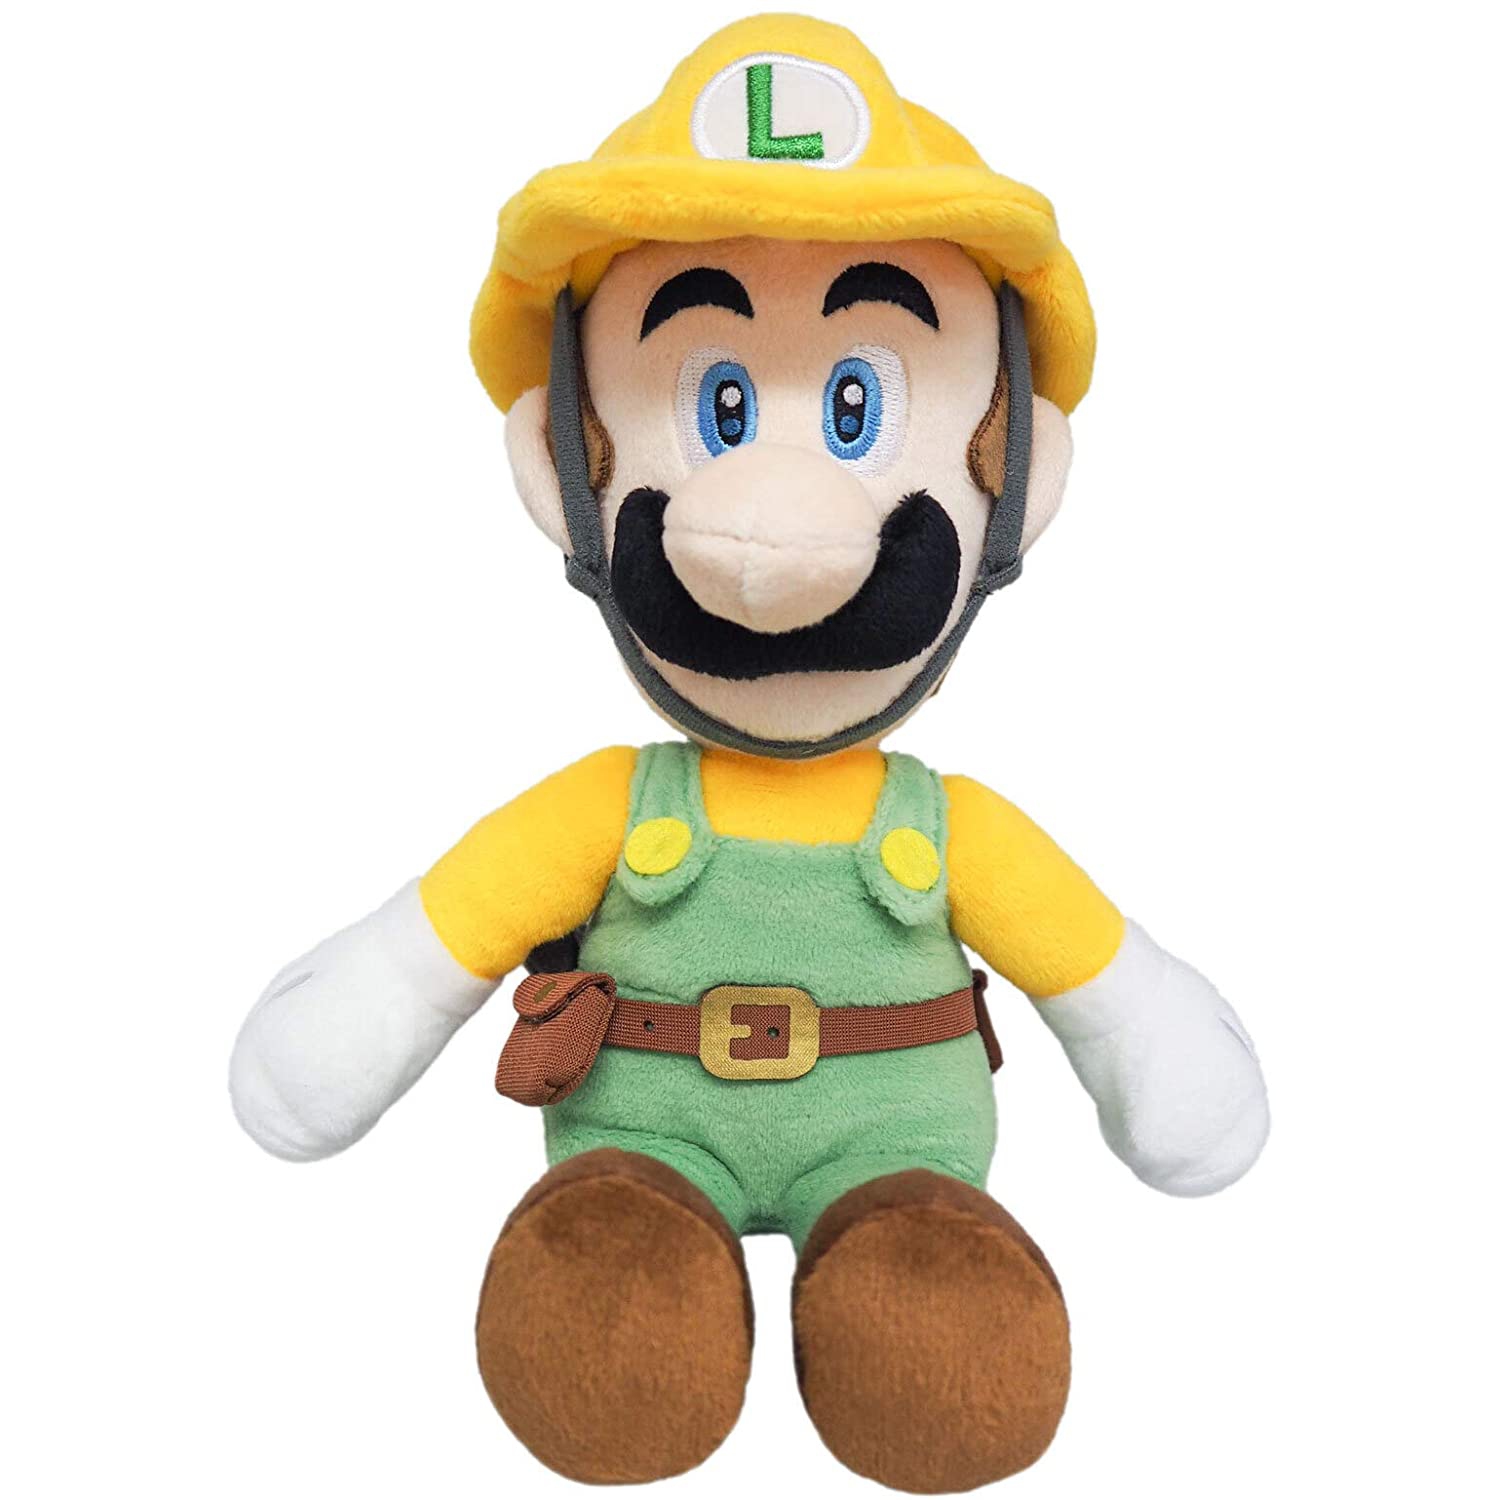 Super Mario Maker 2 - Builder Luigi Plush, 10"